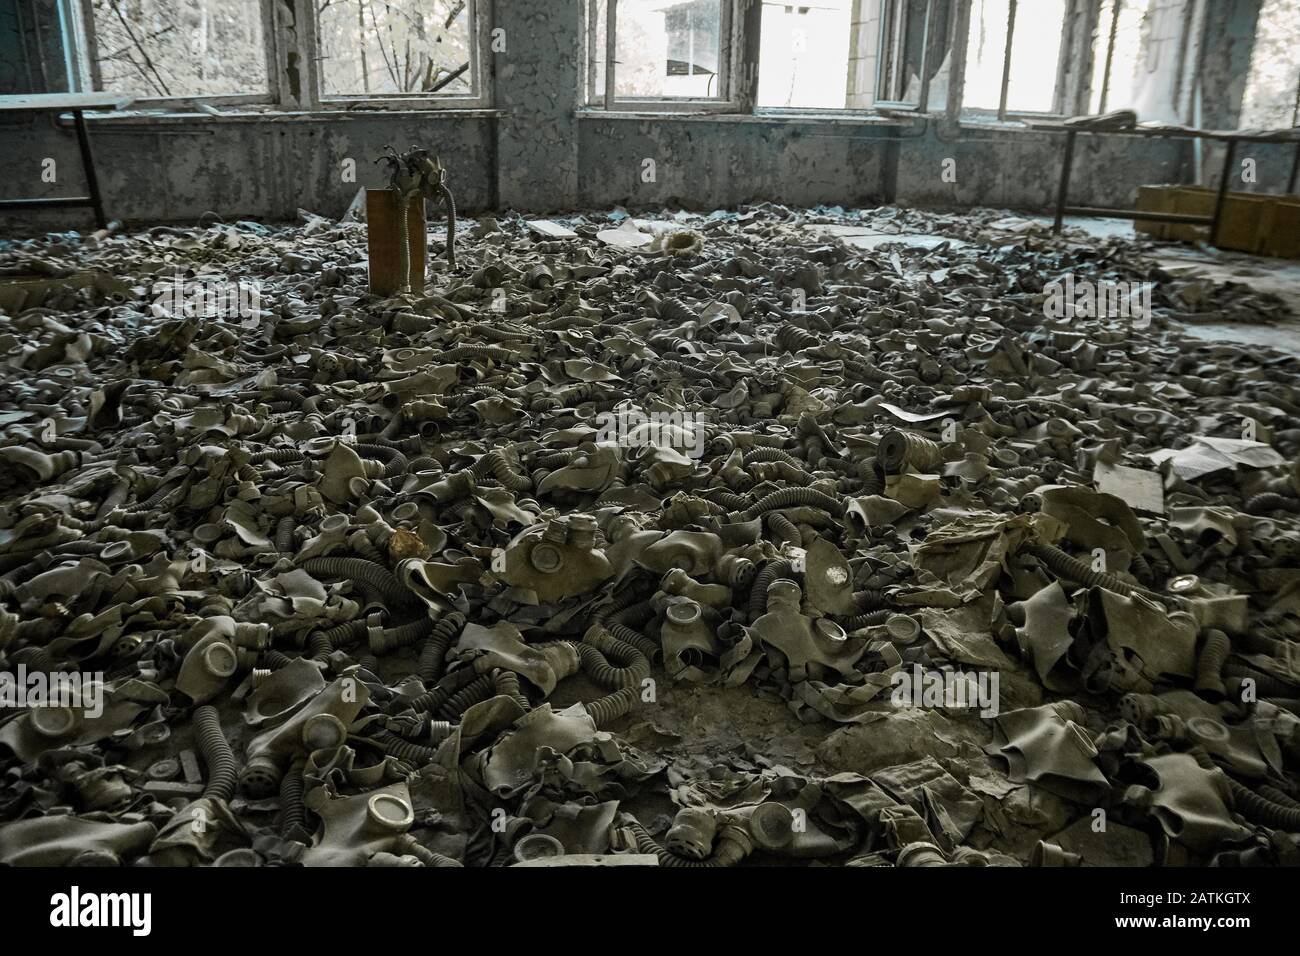 Gasmasken auf dem Boden mit einem alten Fernseher in einer verlassenen Mittelschule in Pripyat - Atomkraftwerkzone von Tschernobyl der Entfremdung Stockfoto